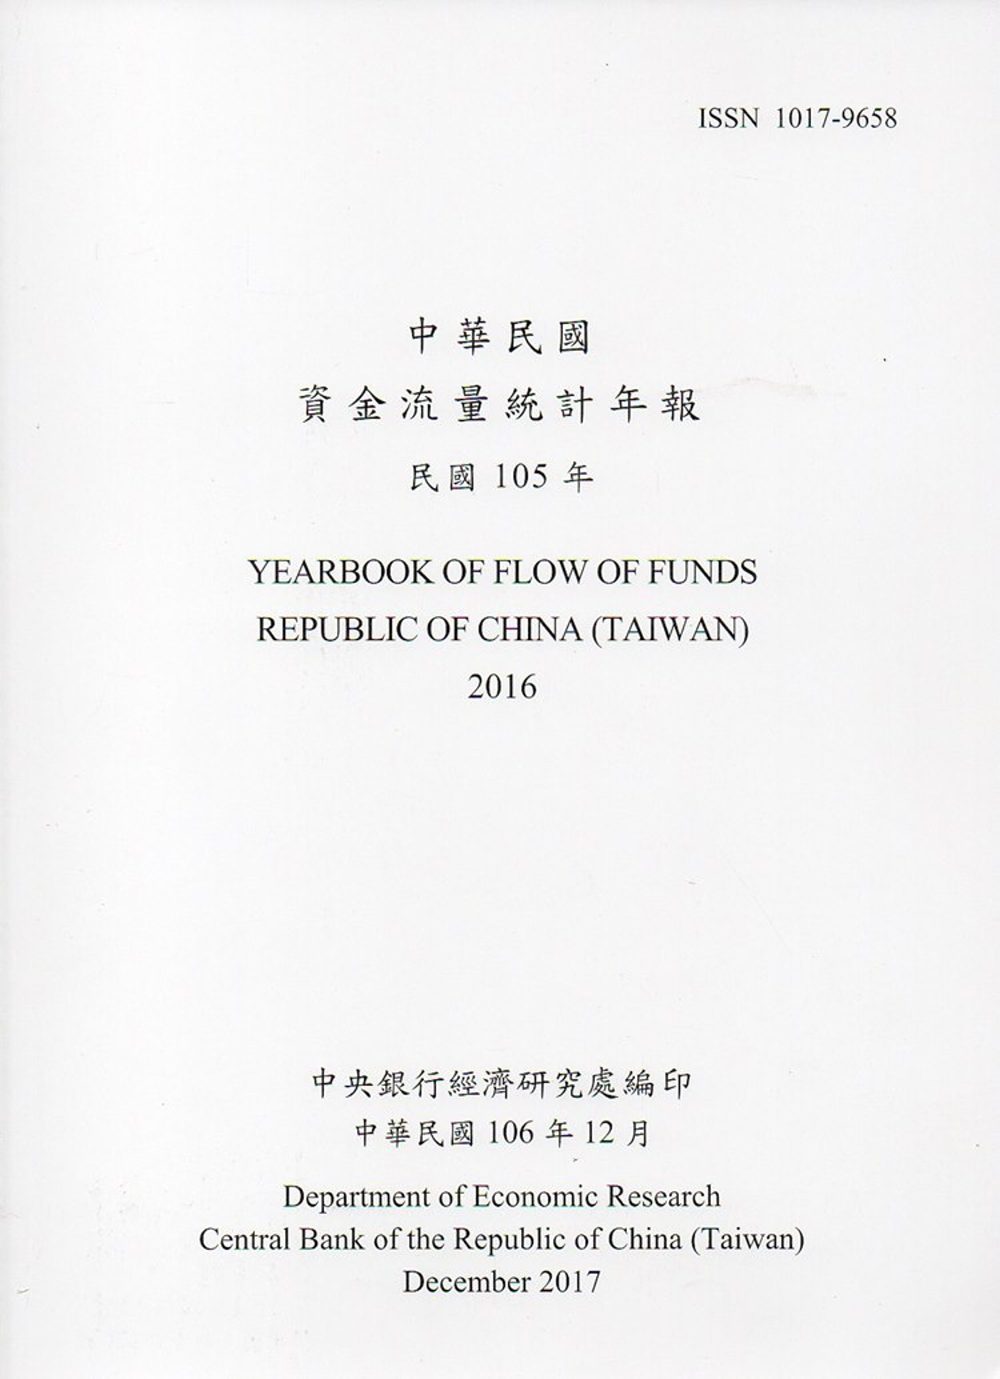 中華民國資金流量統計年報106年12月(民國105年)